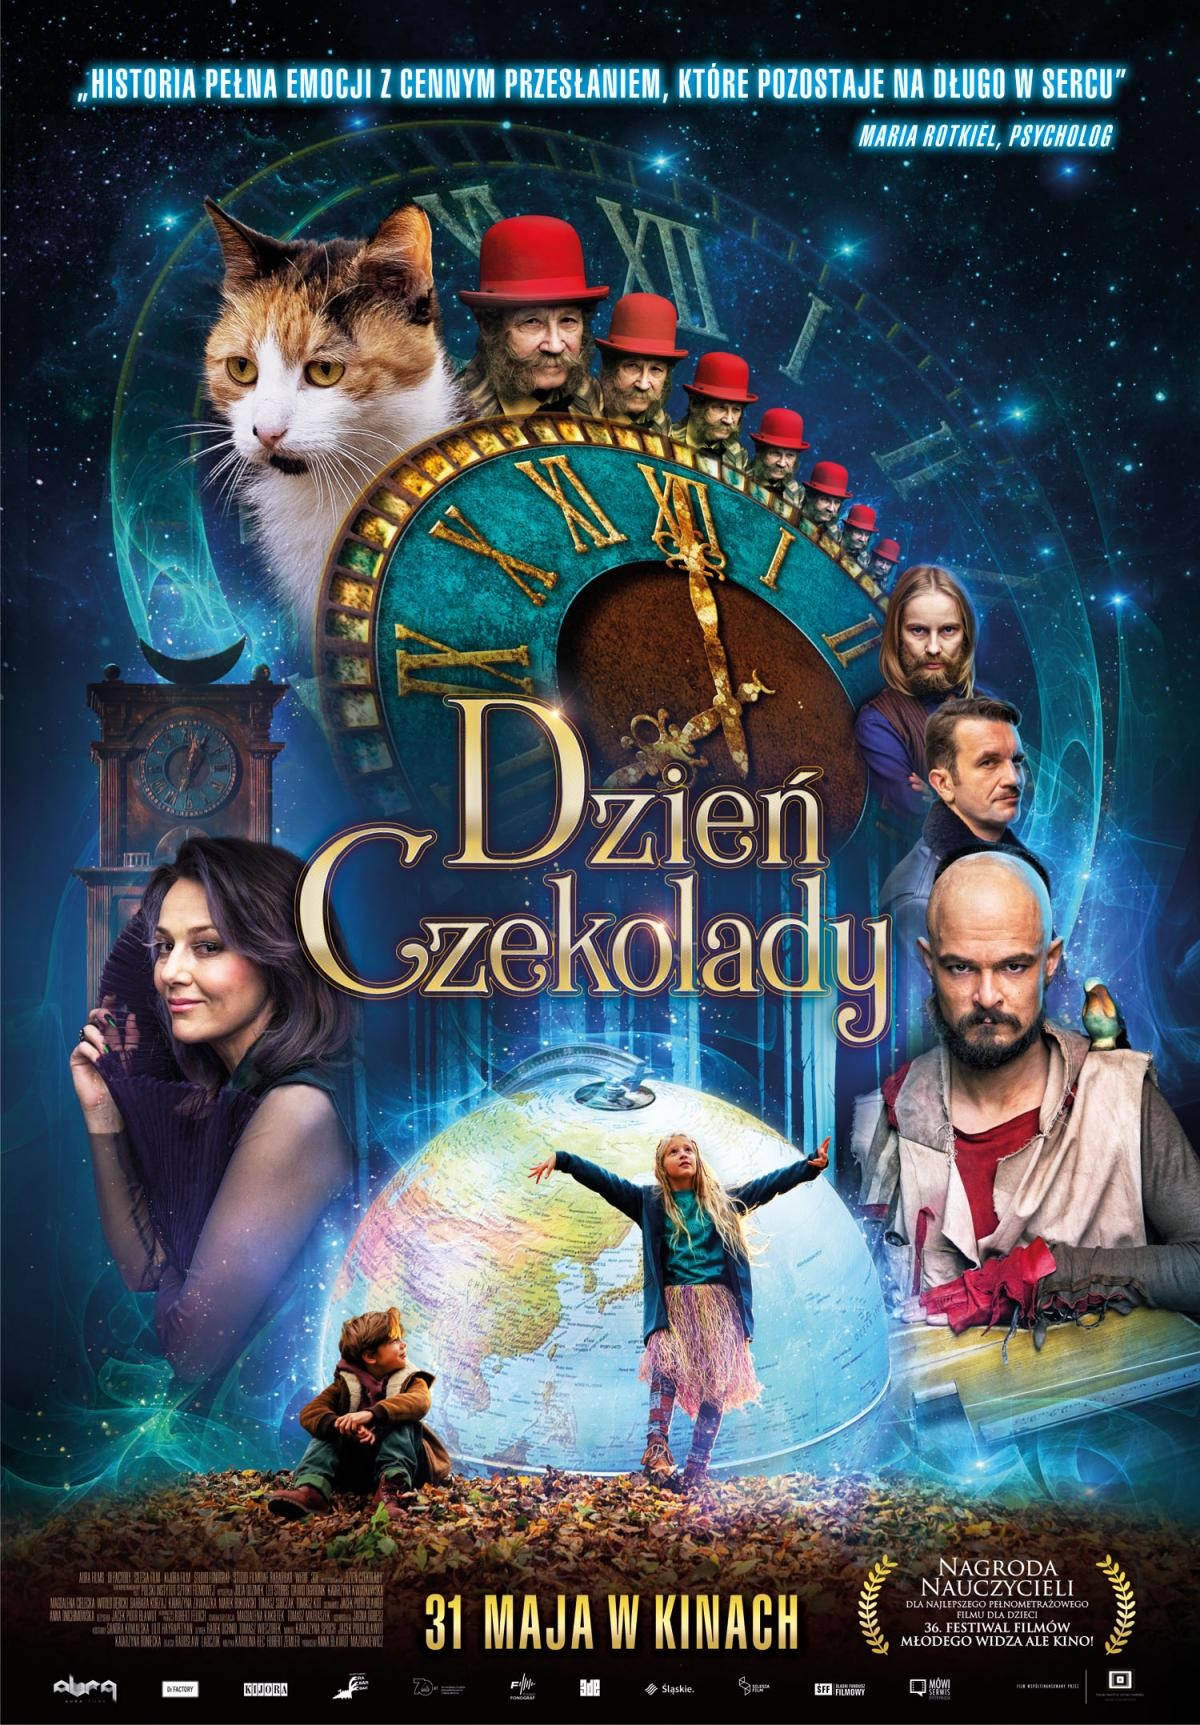 Смотреть Dzien czekolady (2018) на шдрезка